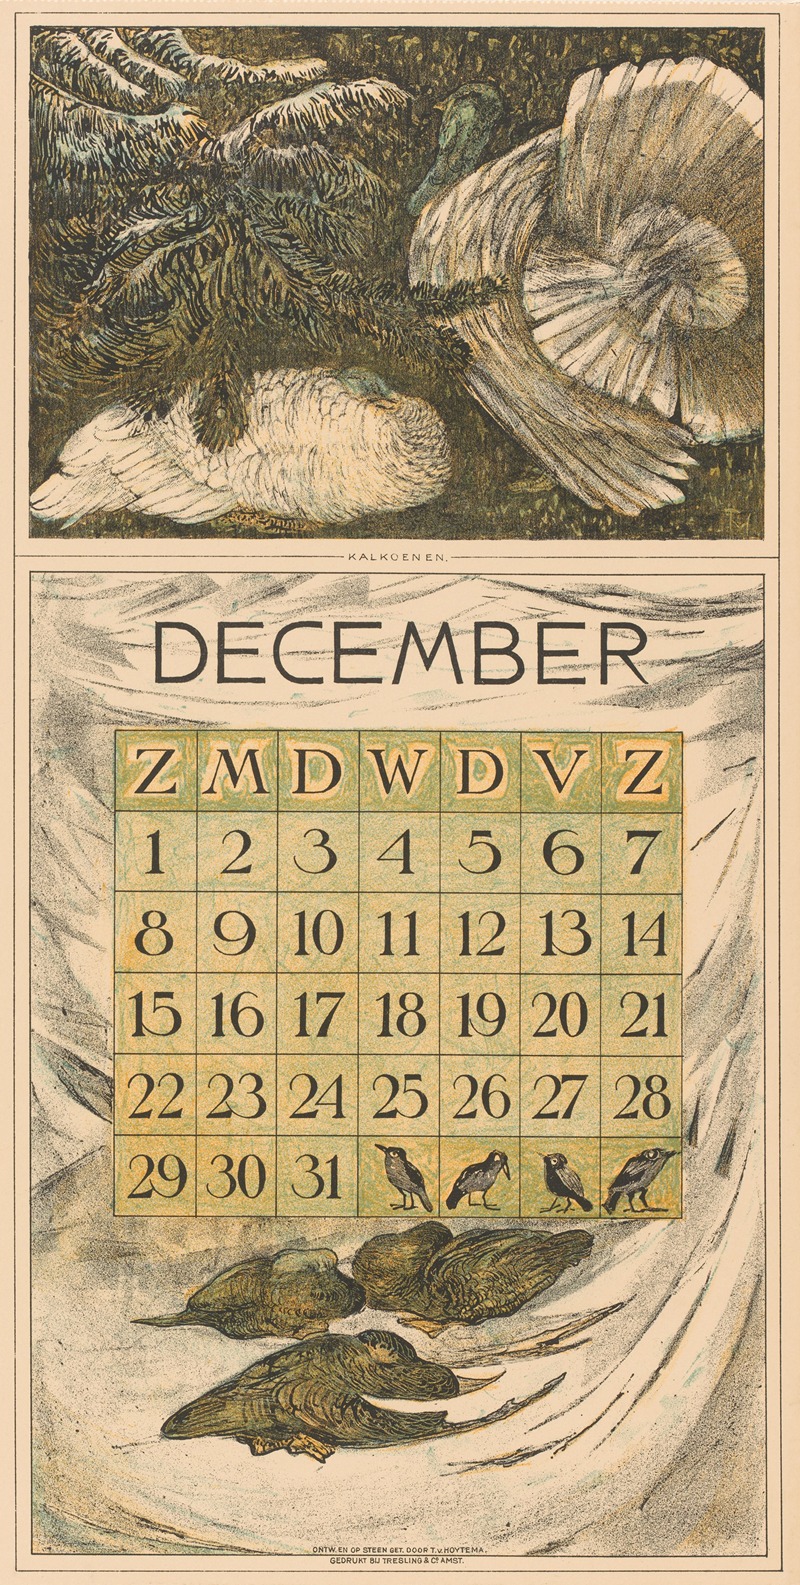 Theo van Hoytema - Kalenderblad december met kalkoenen en eenden